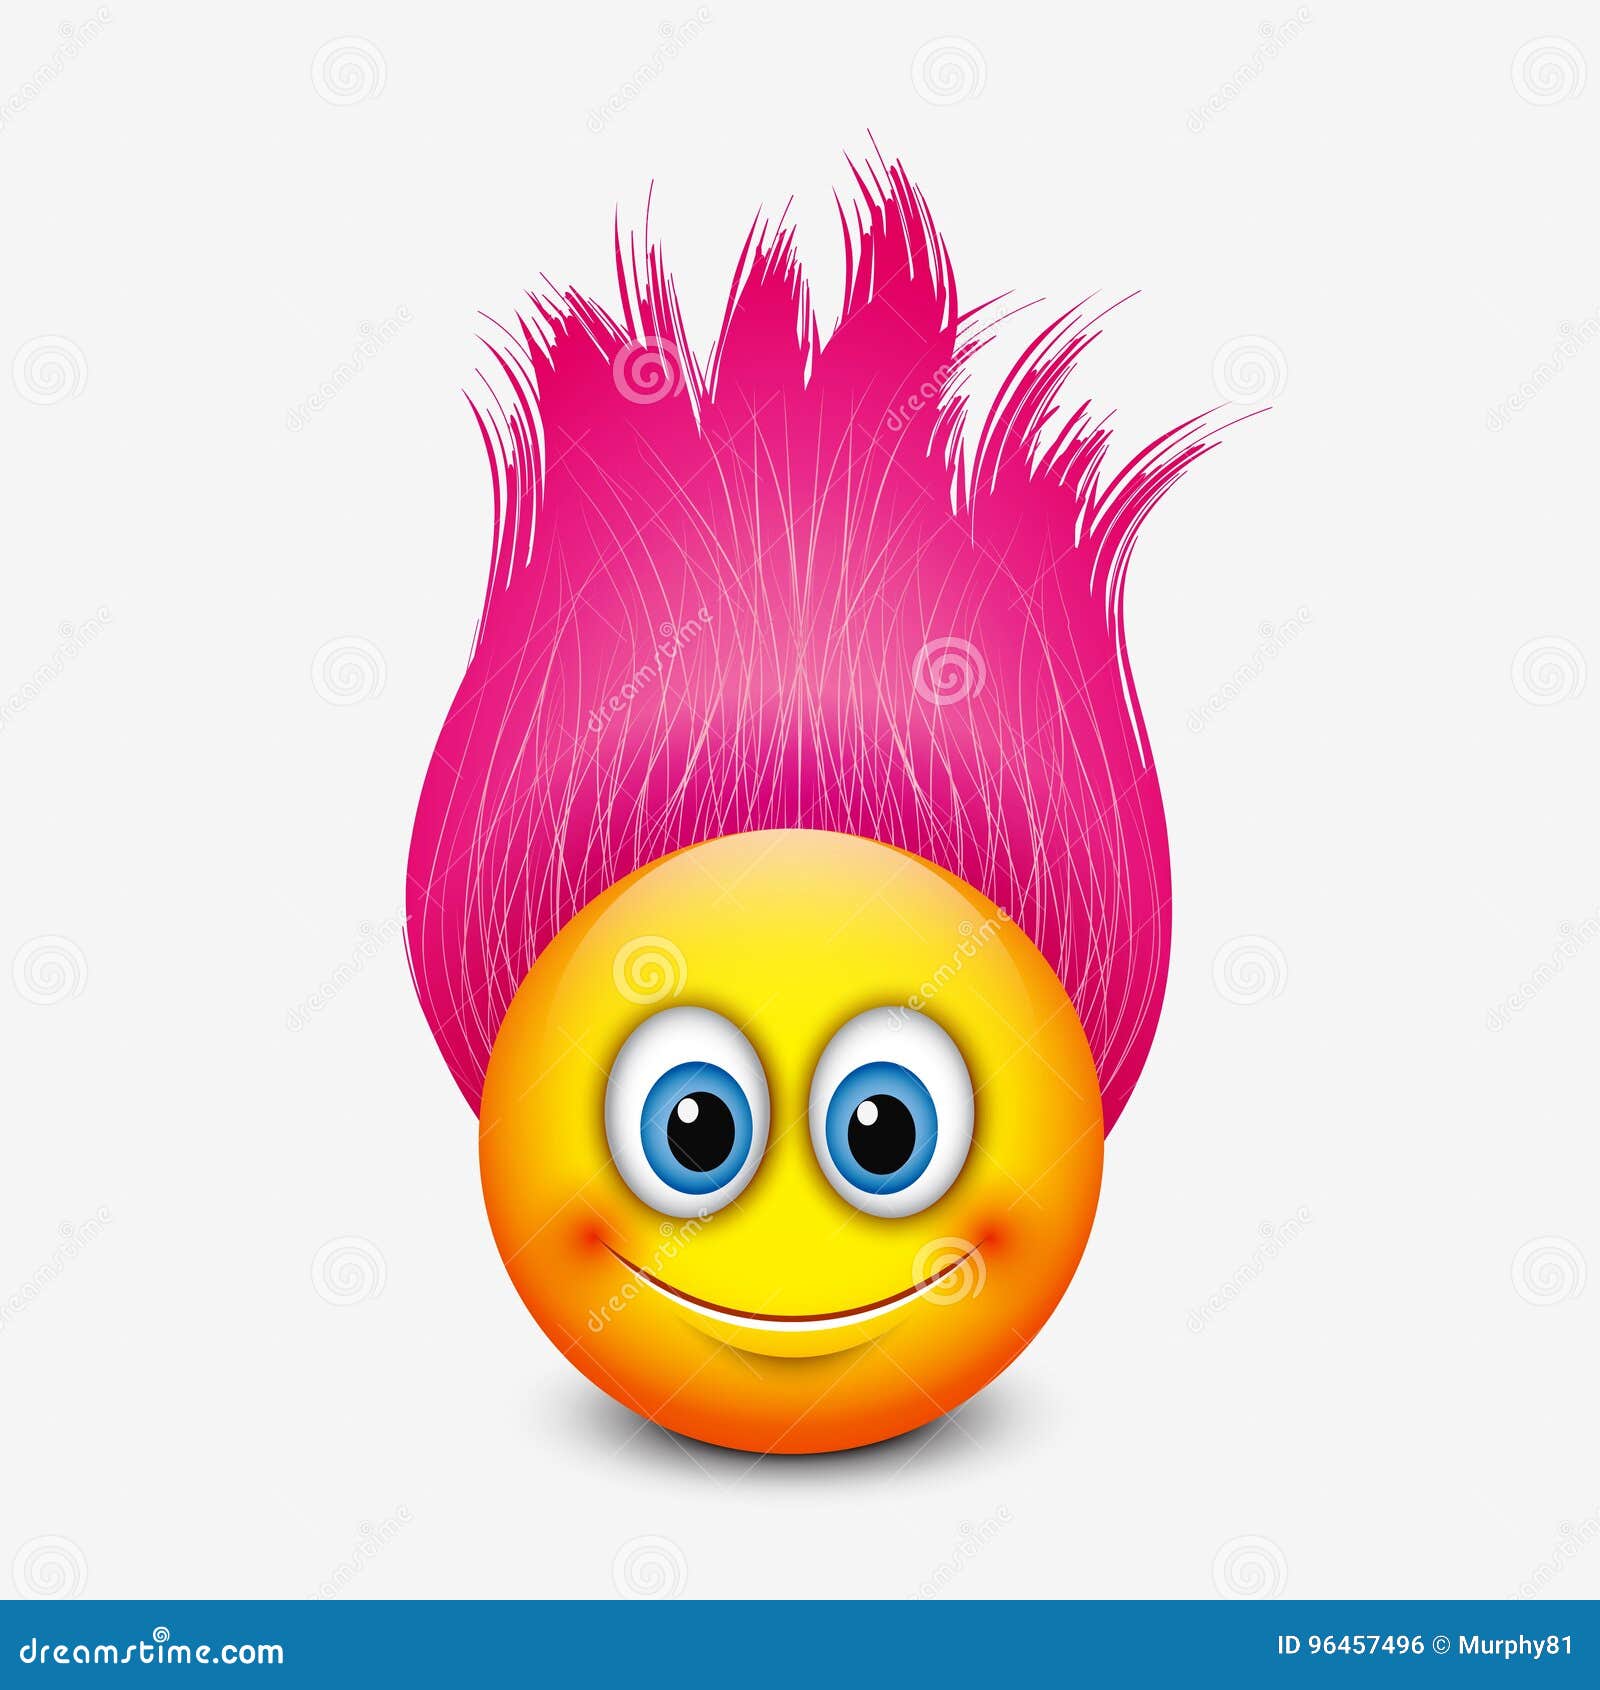 Emojis podem ganhar opções de pessoas com cabelos coloridos